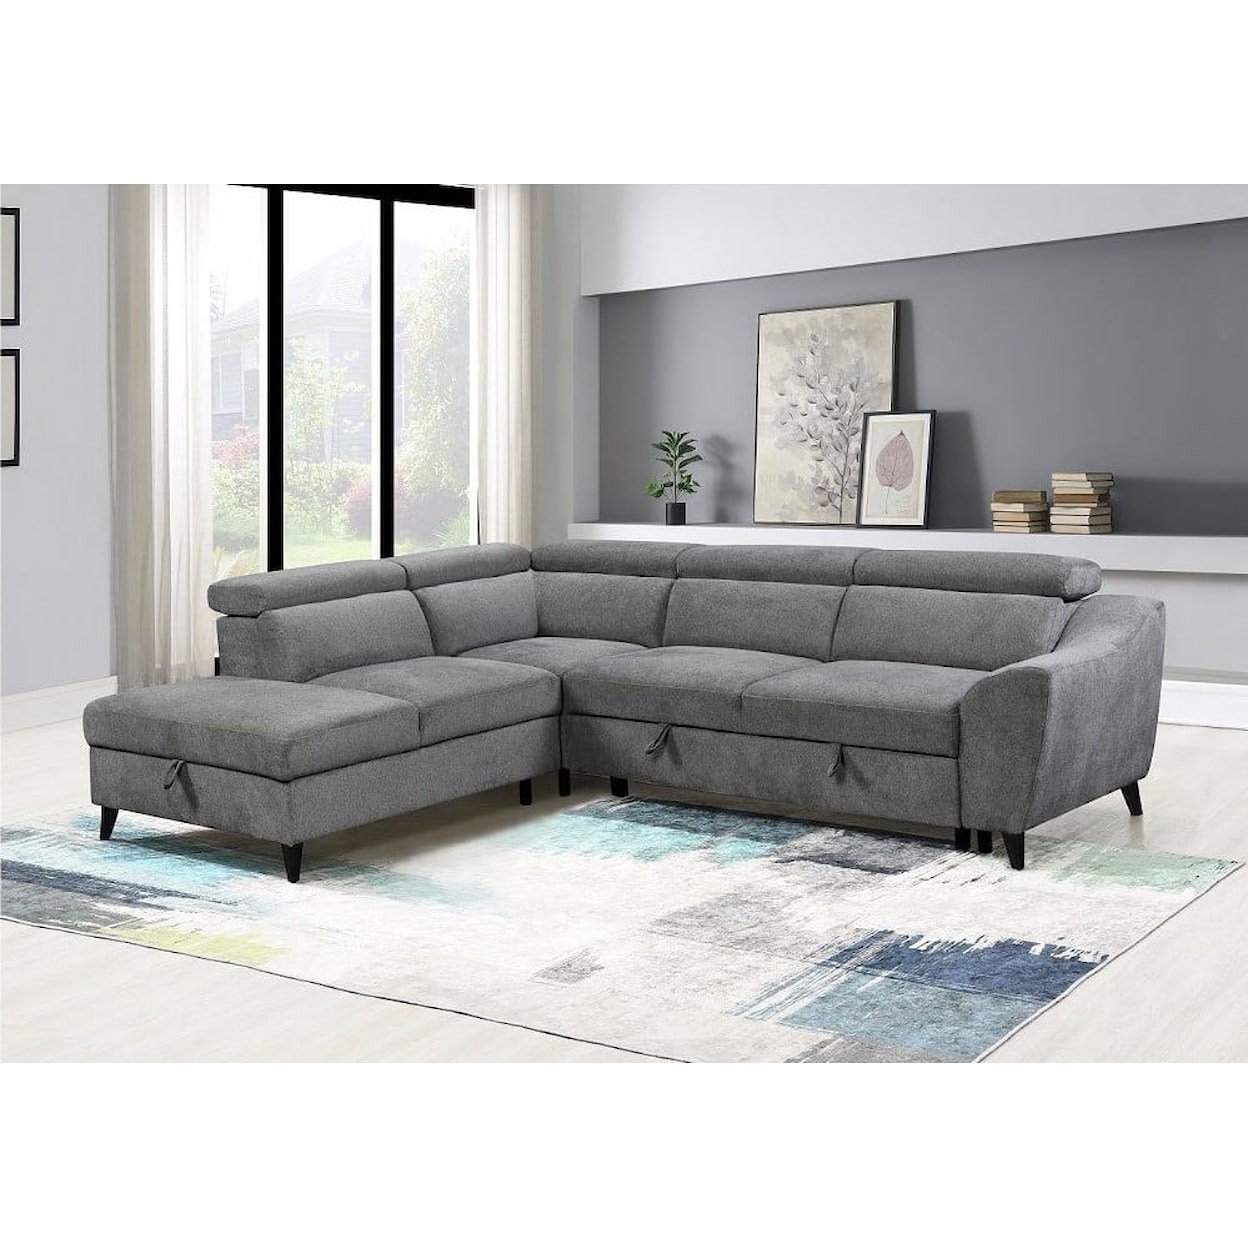 Acme Furniture Wrenley Sectional Sleeper Sofa